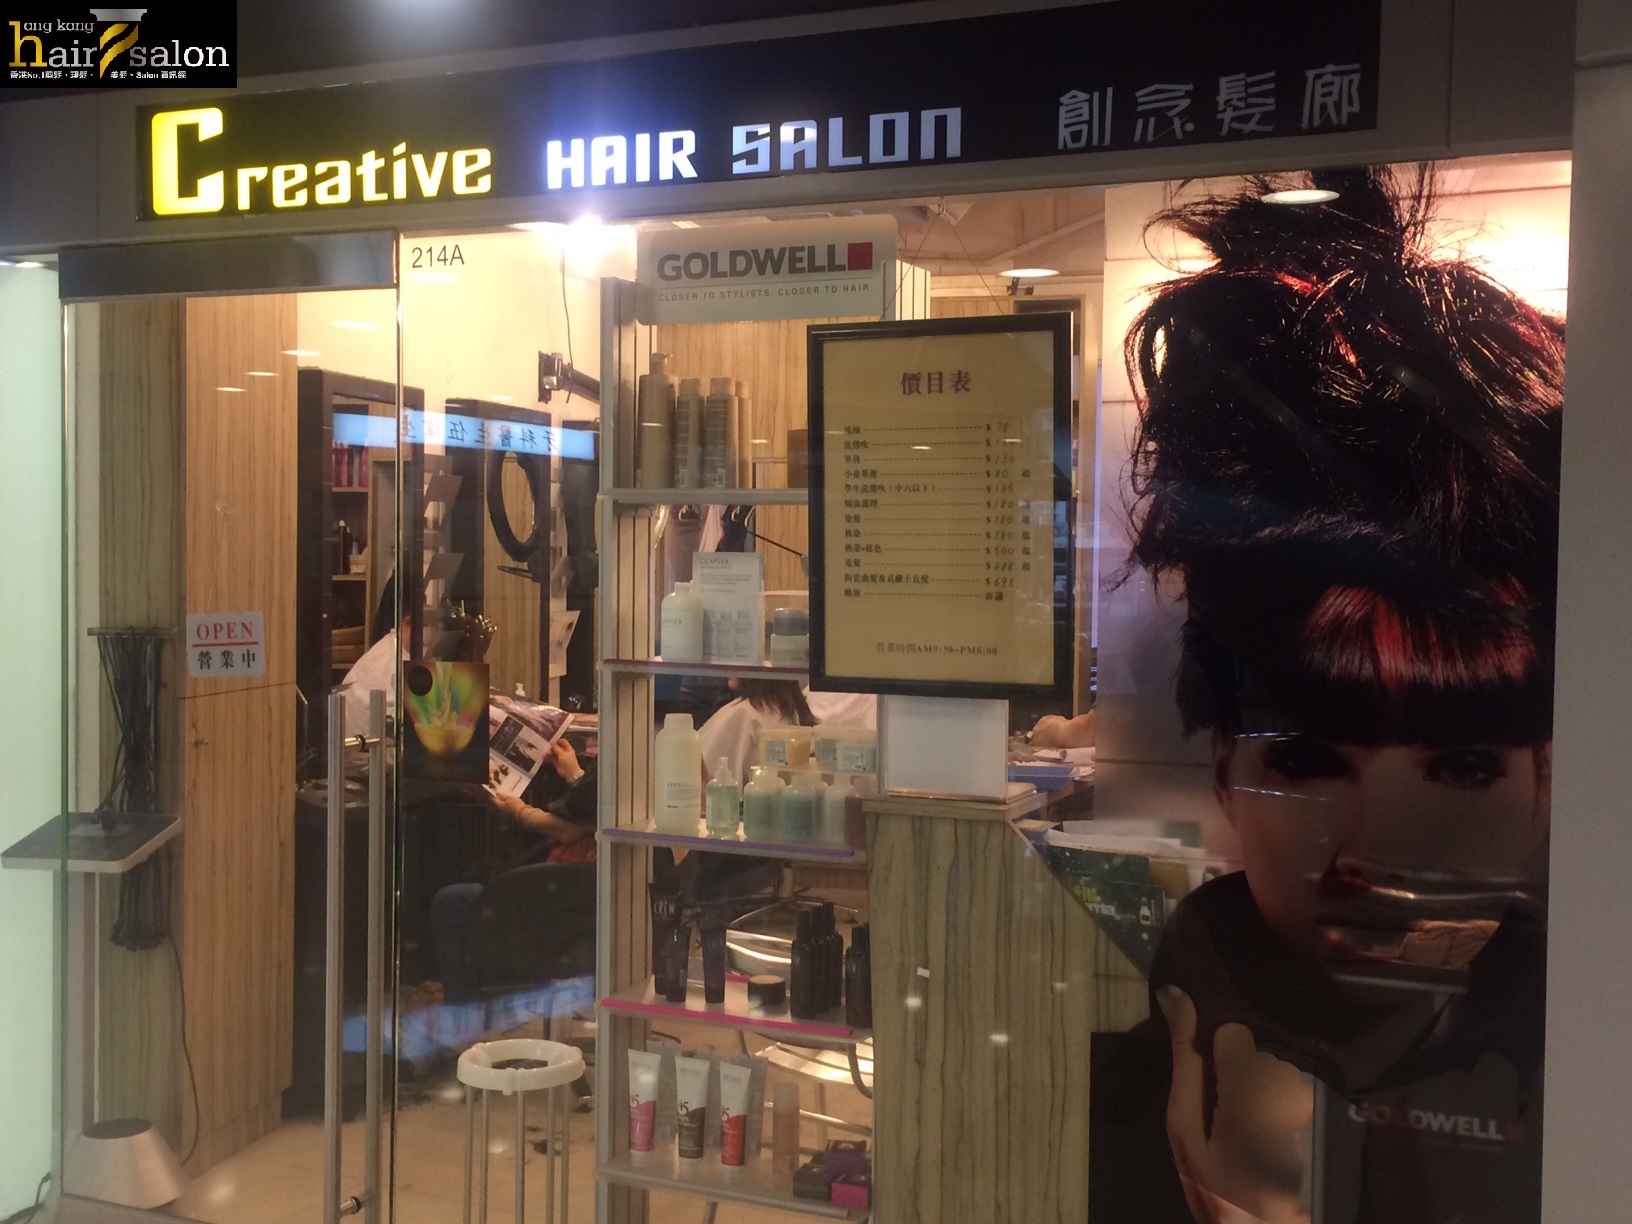 洗剪吹/洗吹造型: Creative Hair Salon 創念髮廊